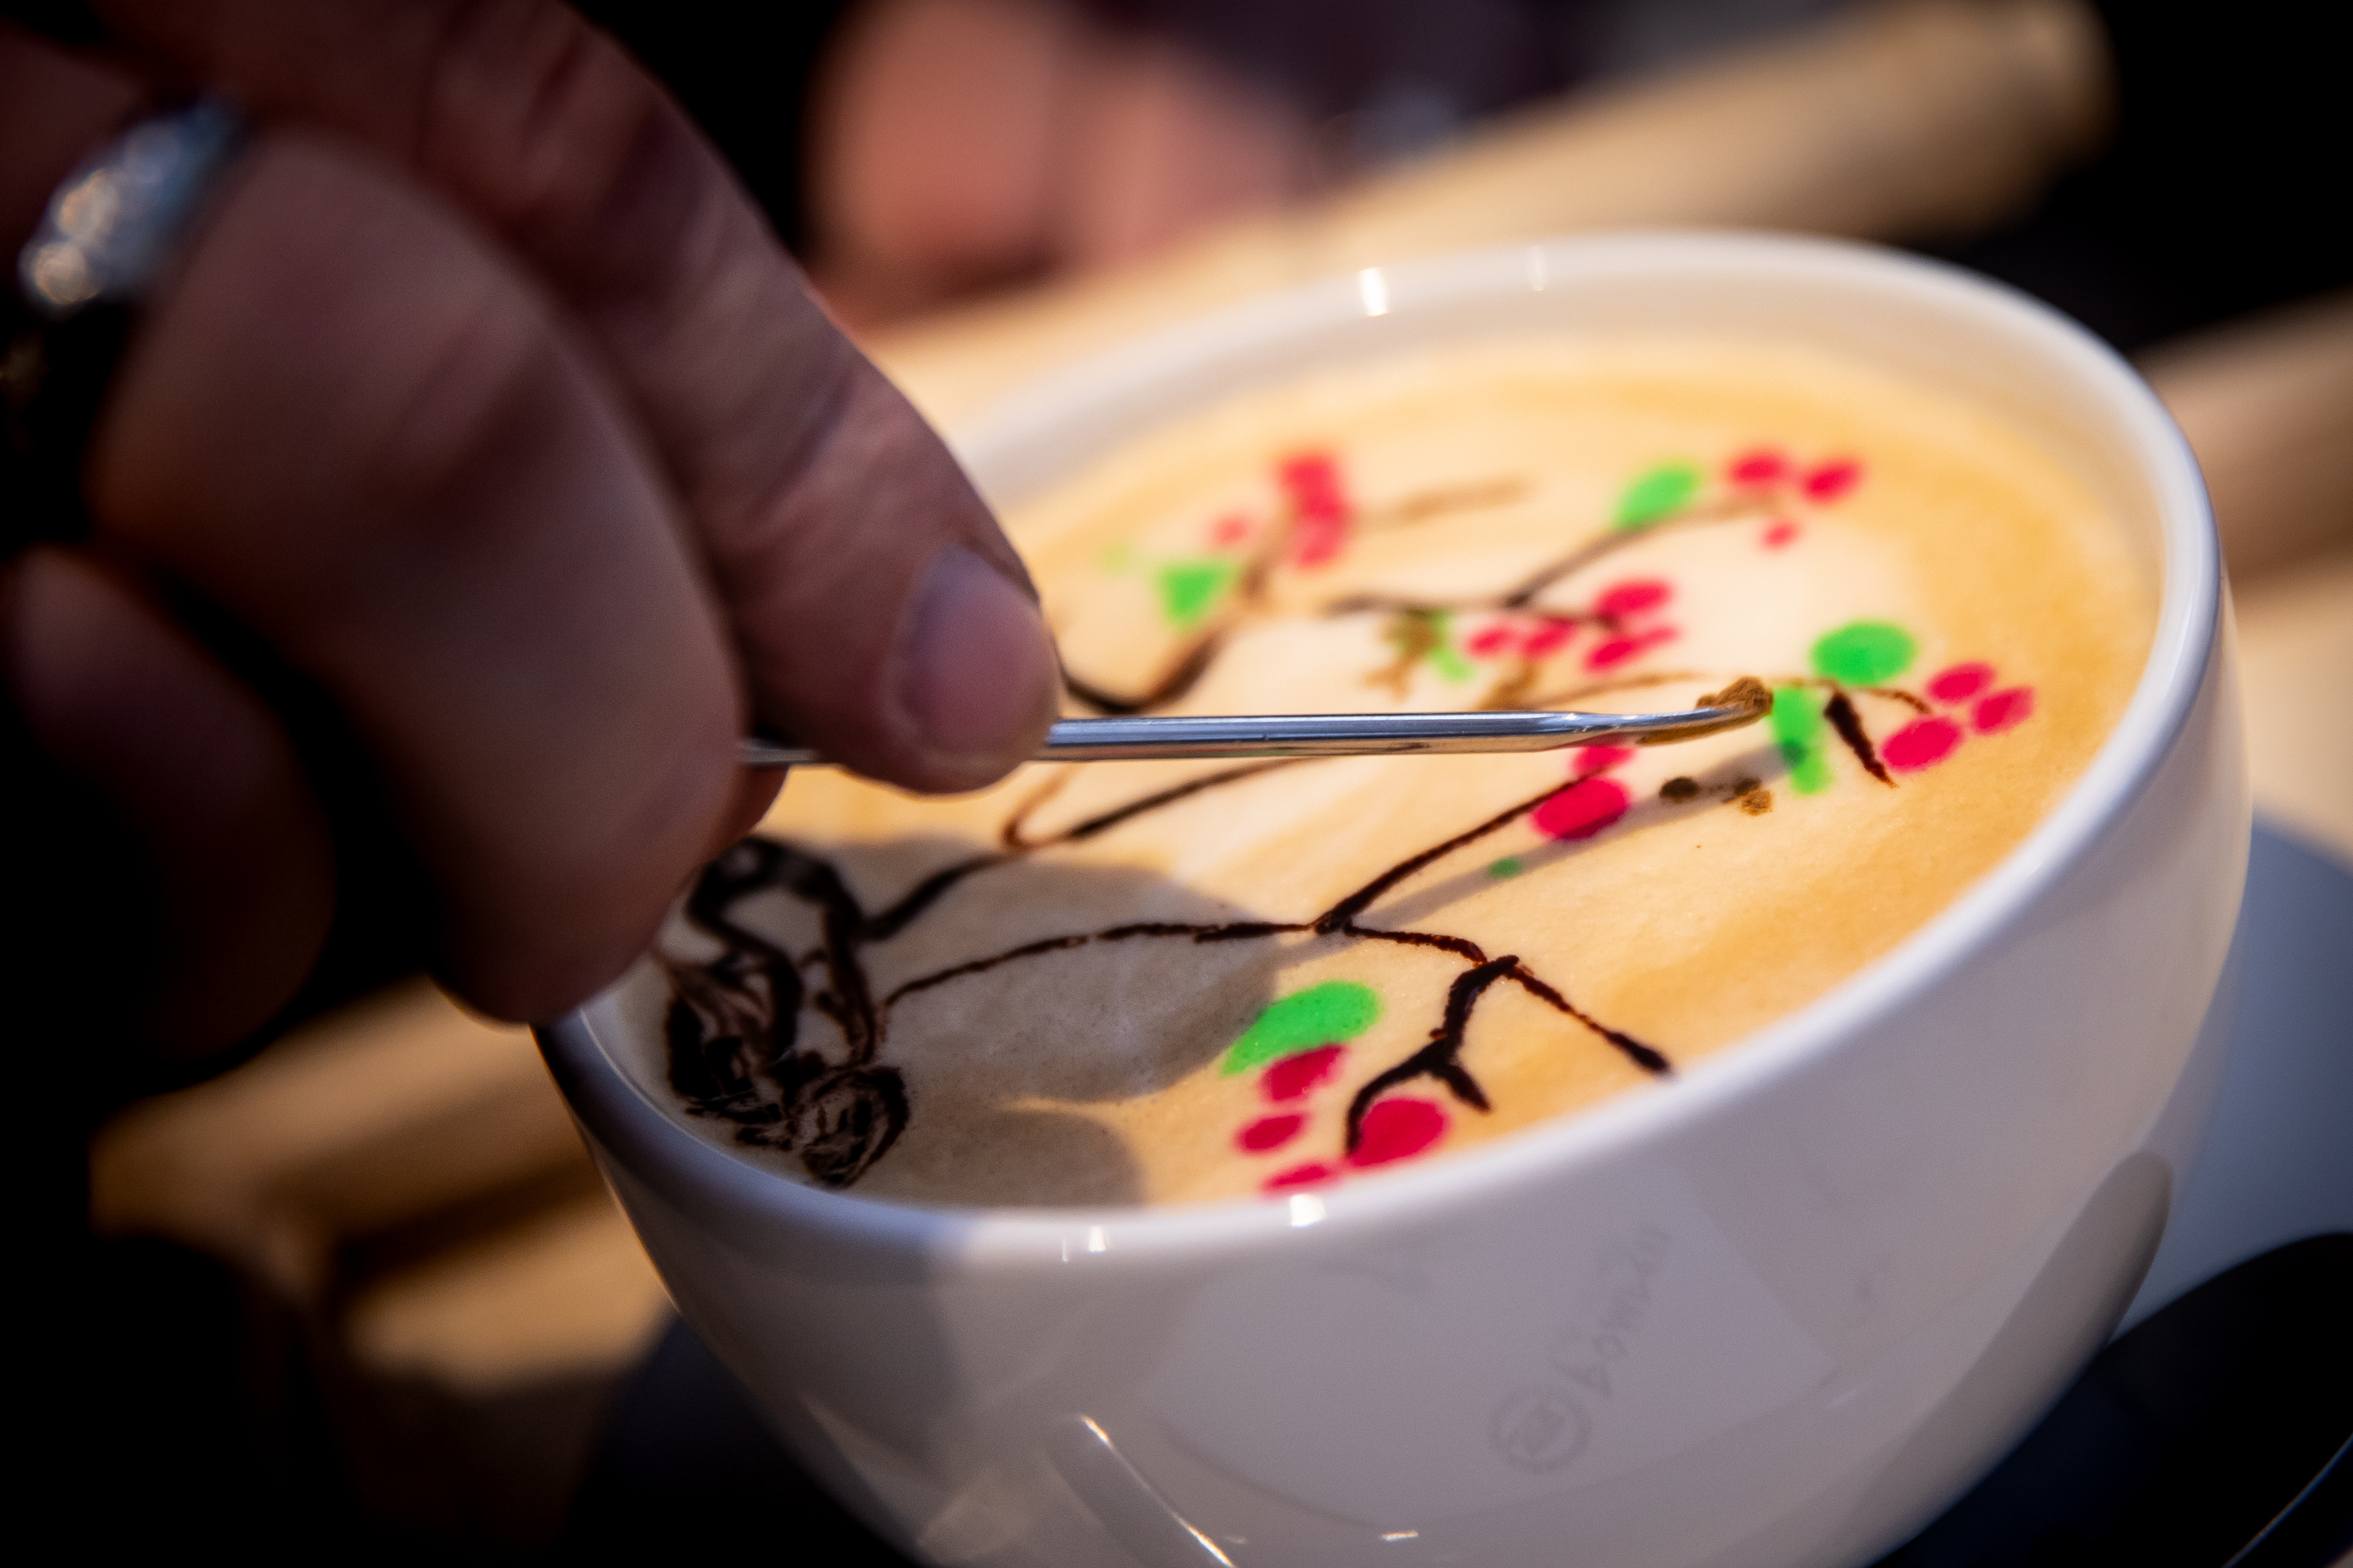 Mit adtak még a rómaiak? Hattyút a kávénk tetejére! – A Pompeii Latte Art Cafféban jártunk